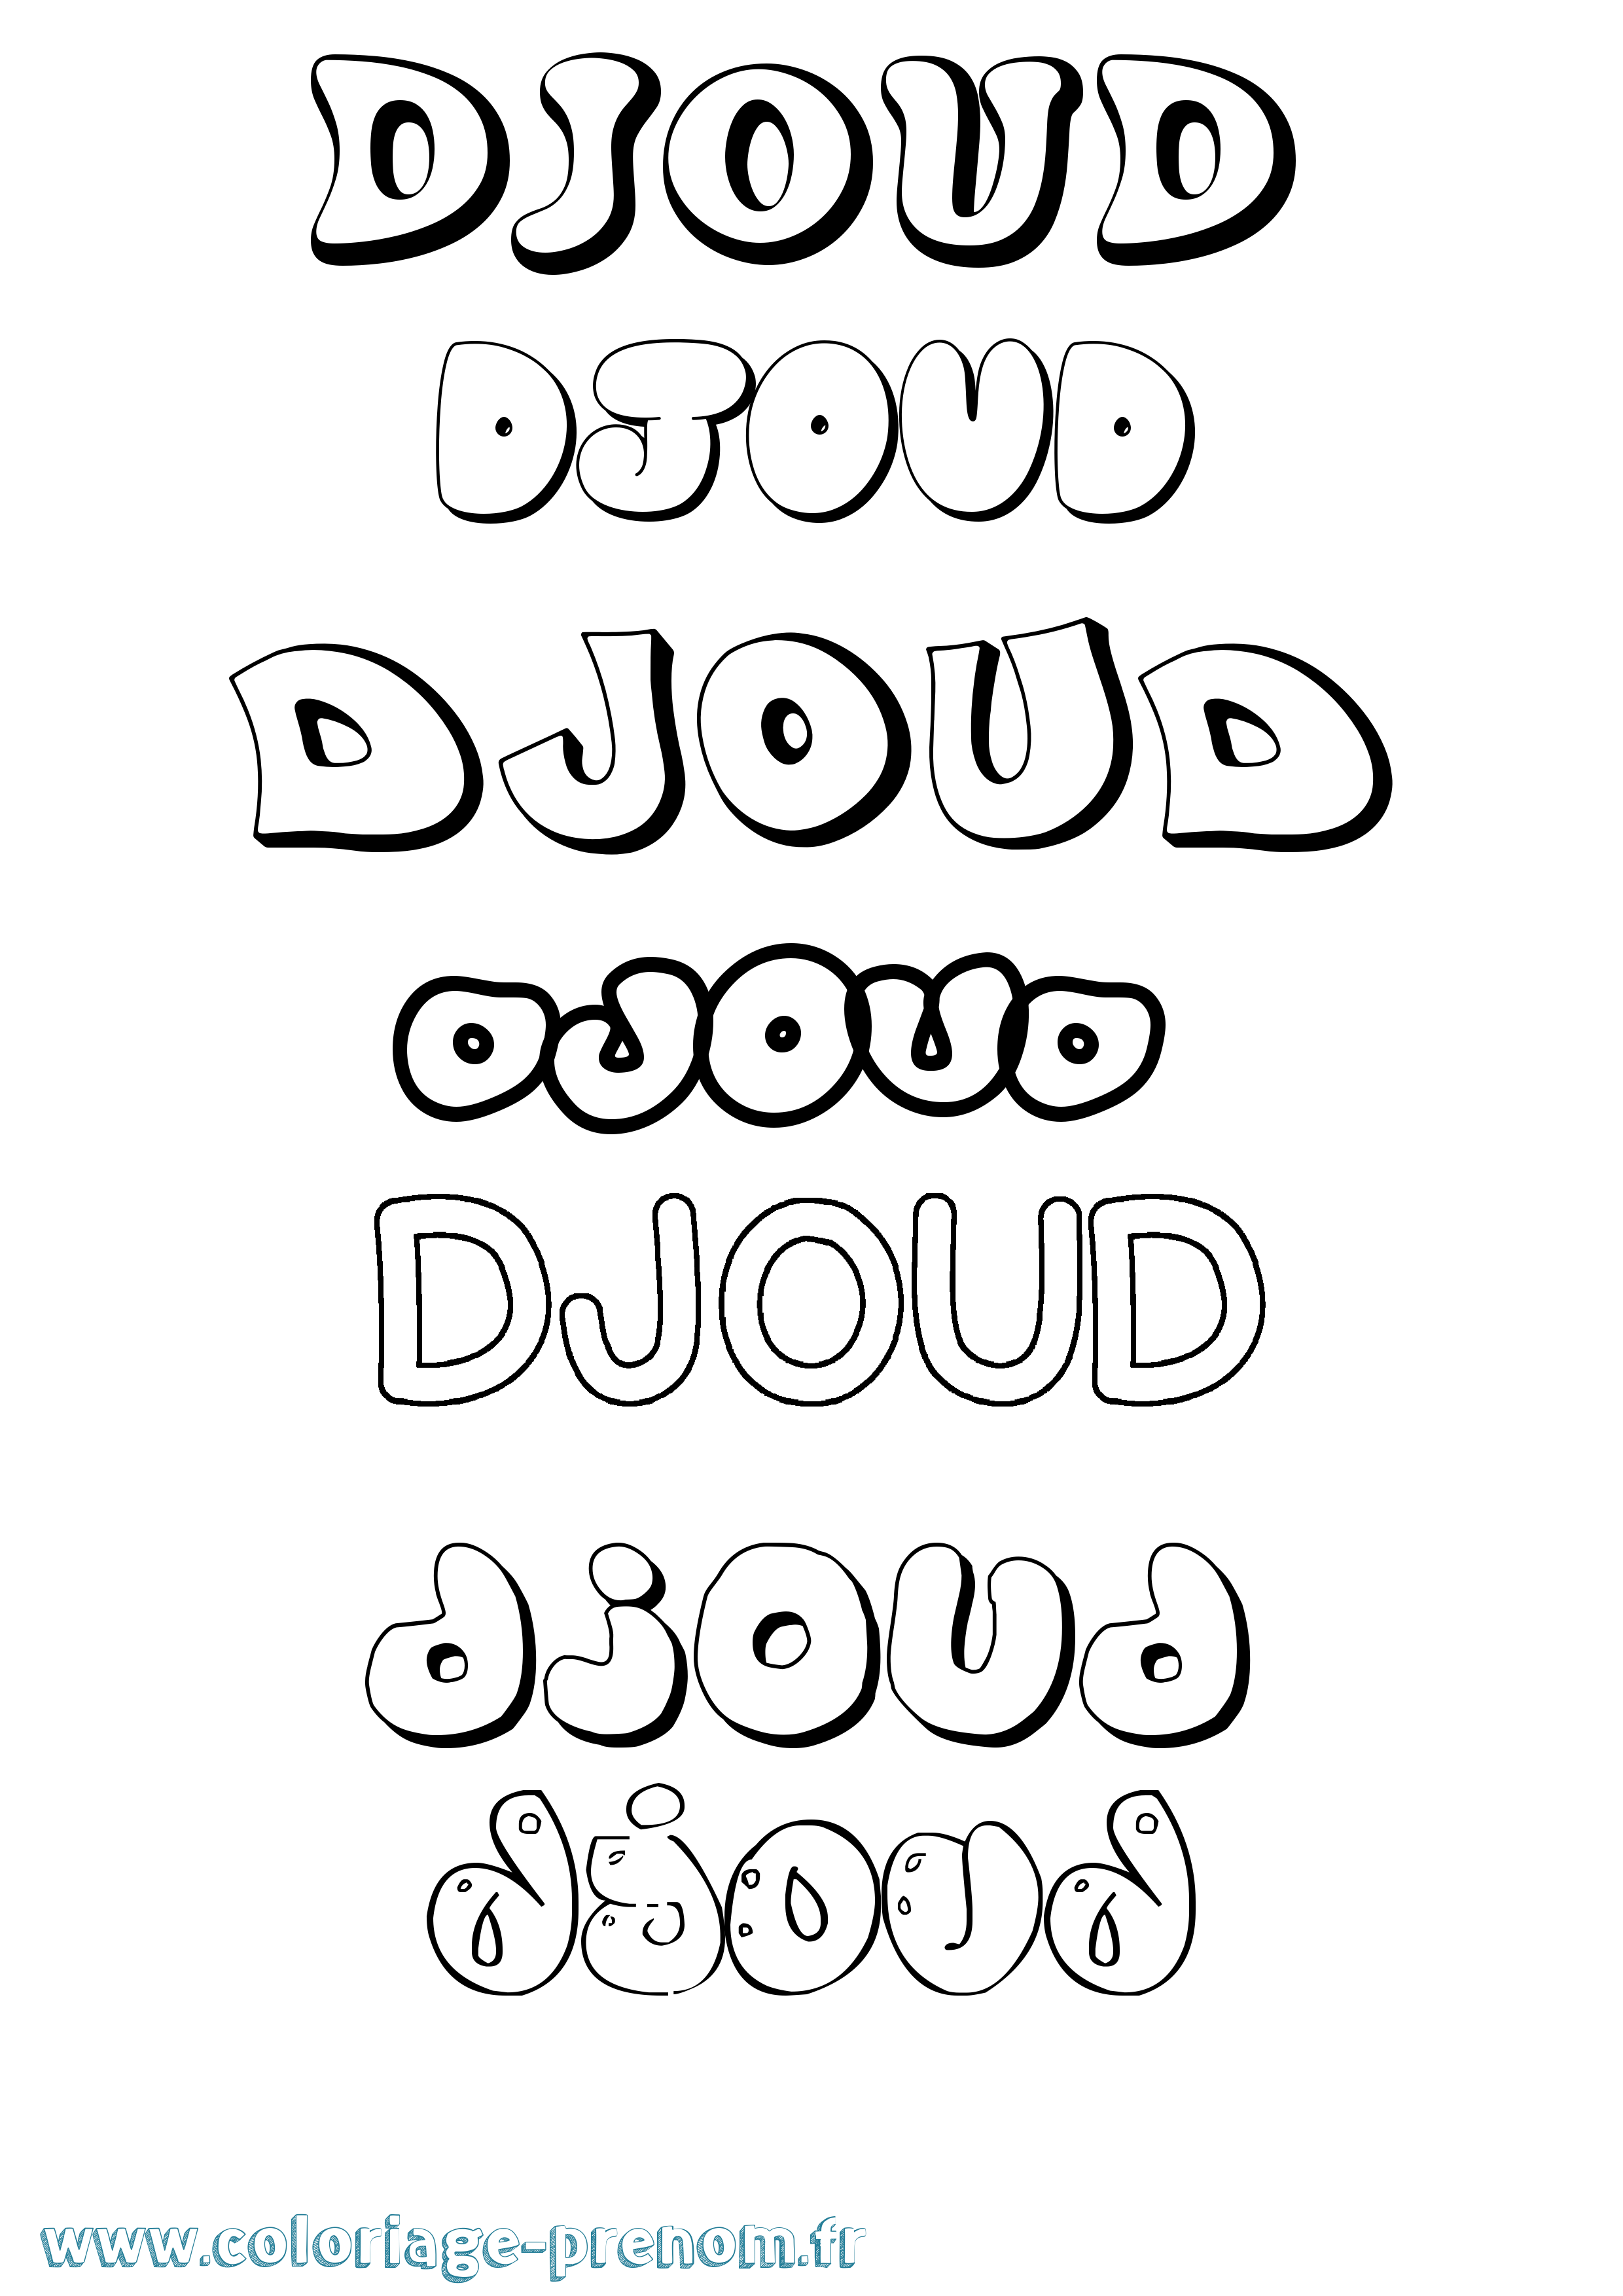 Coloriage prénom Djoud Bubble